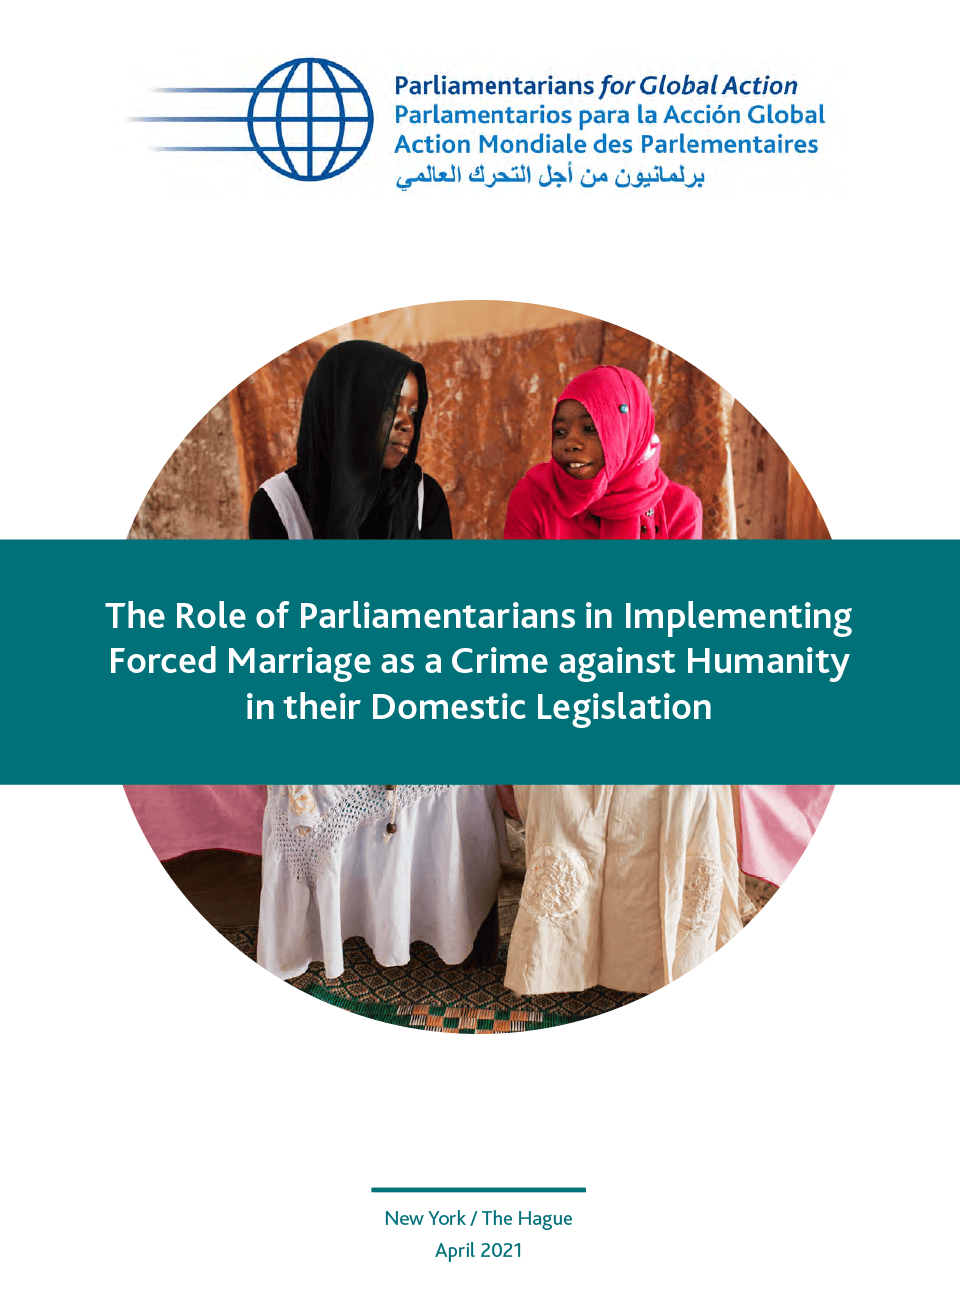 El papel de los parlamentarios en la aplicación del matrimonio forzado como crimen de lesa humanidad en su legislación nacional